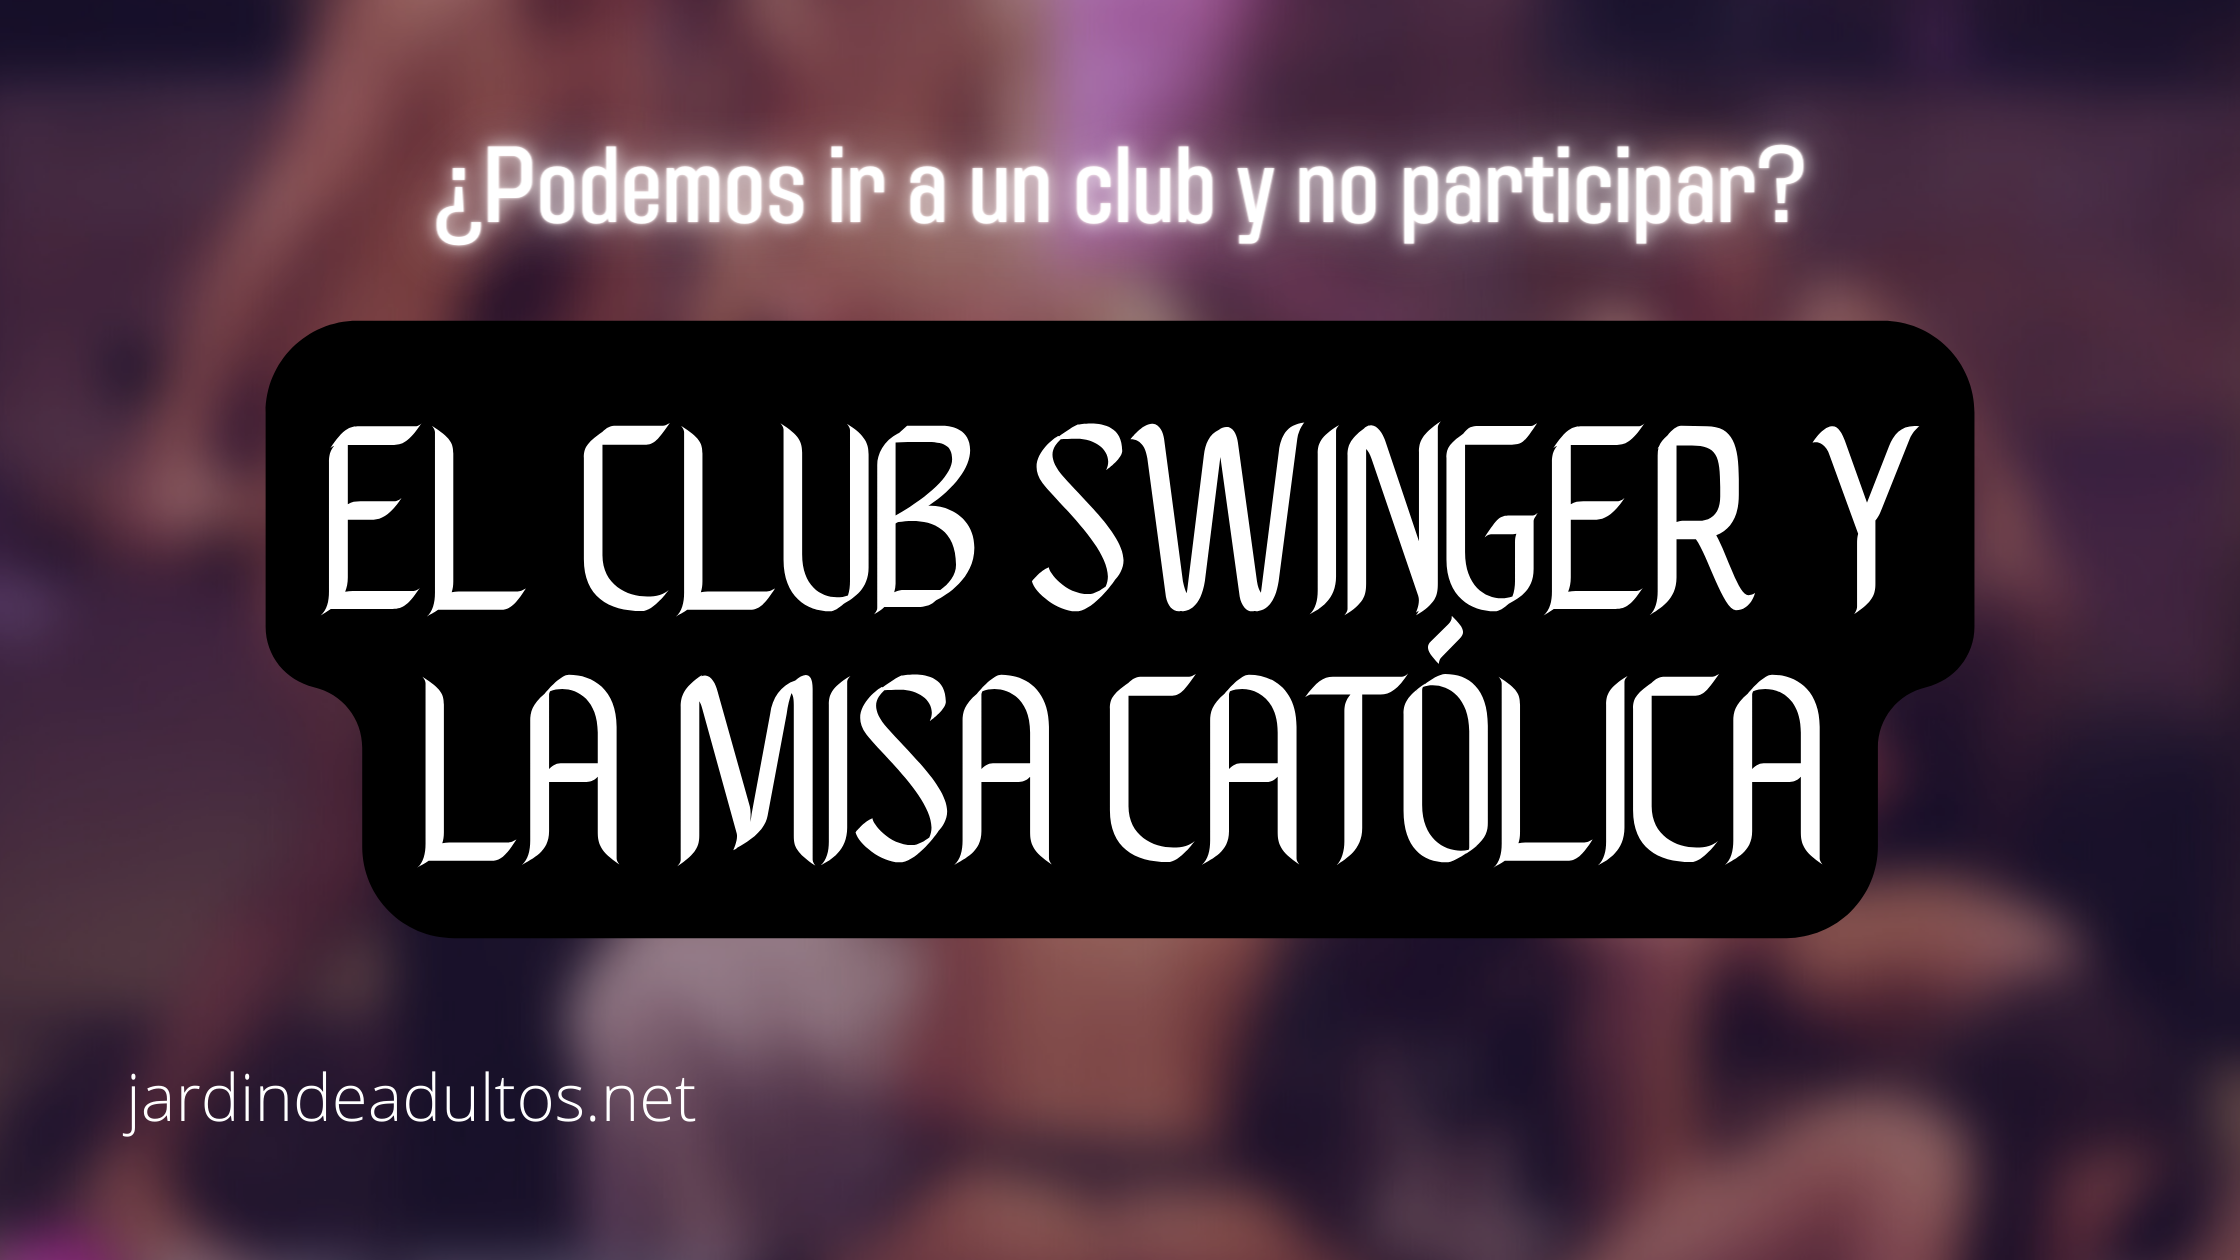 Podemos ir a un club swinger y no participar? picture